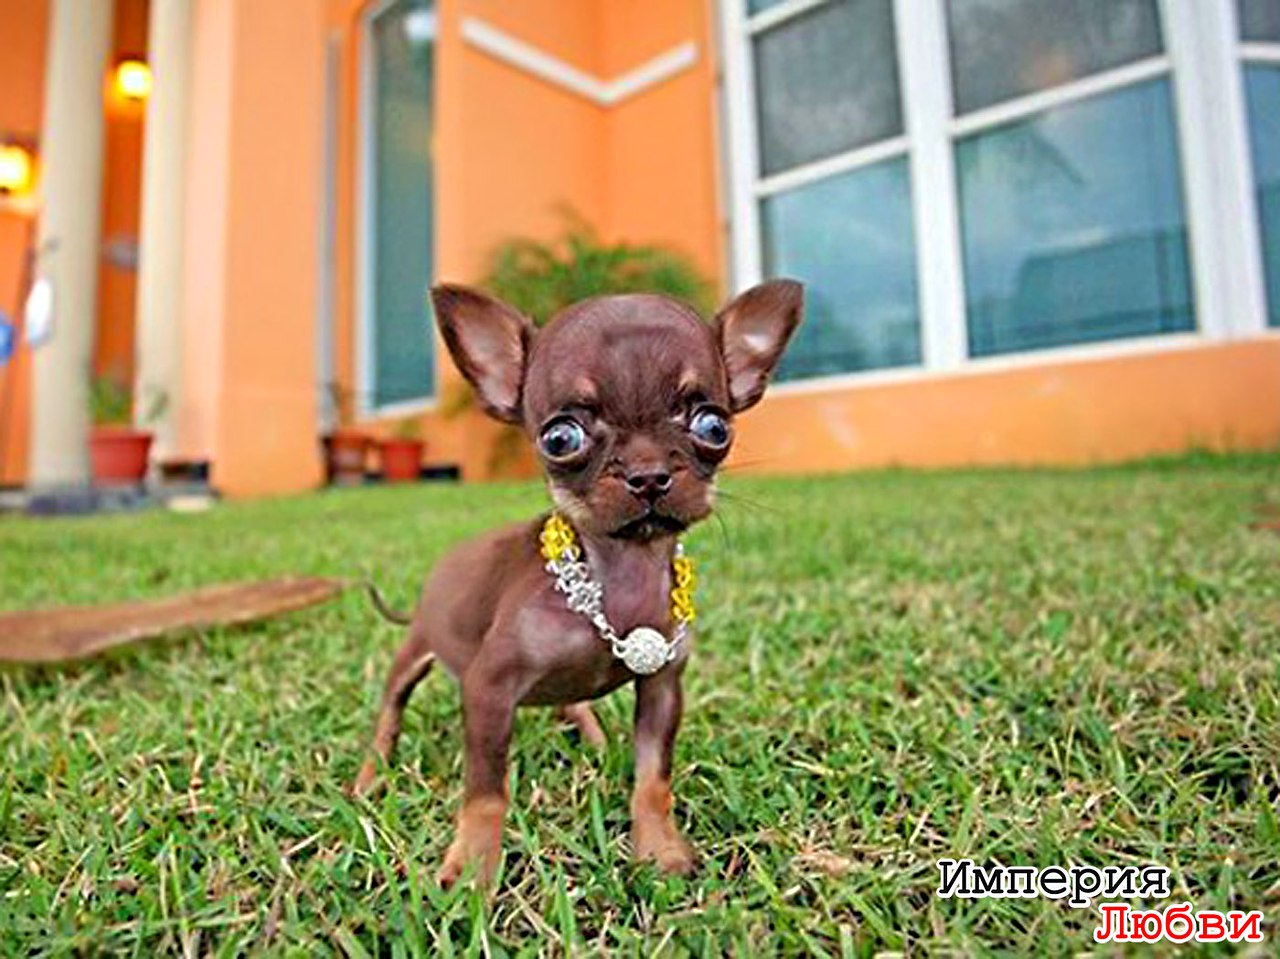 Название самой маленькой породы собак. Карликовый чихуахуа. Чихуахуа БУБУ. Чихуахуа Милли. Шишколобые Гнидодавы.